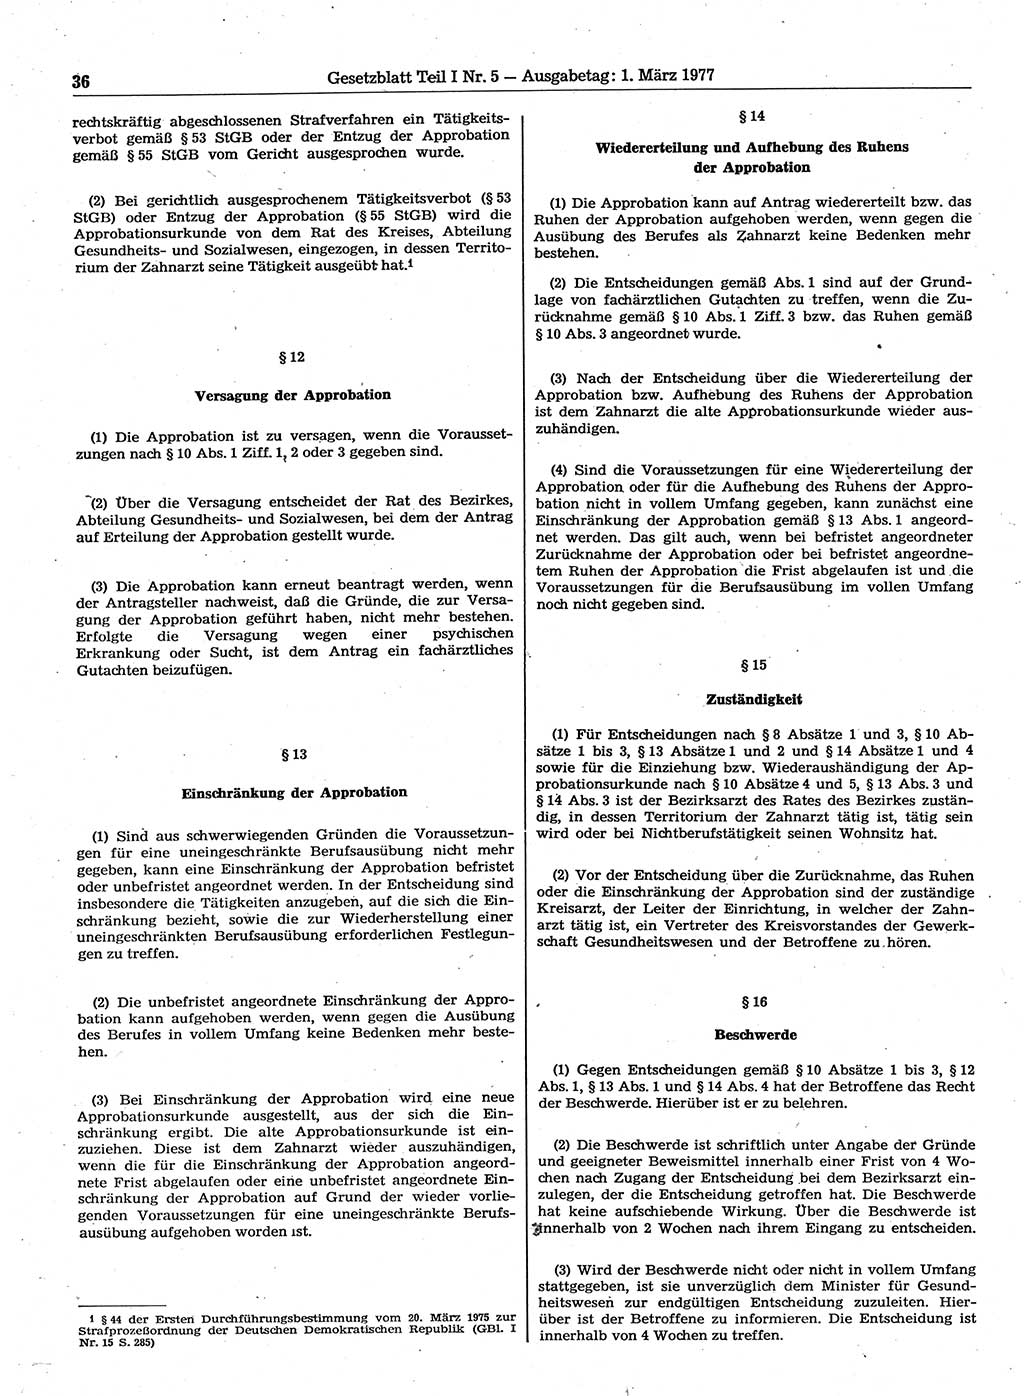 Gesetzblatt (GBl.) der Deutschen Demokratischen Republik (DDR) Teil Ⅰ 1977, Seite 36 (GBl. DDR Ⅰ 1977, S. 36)